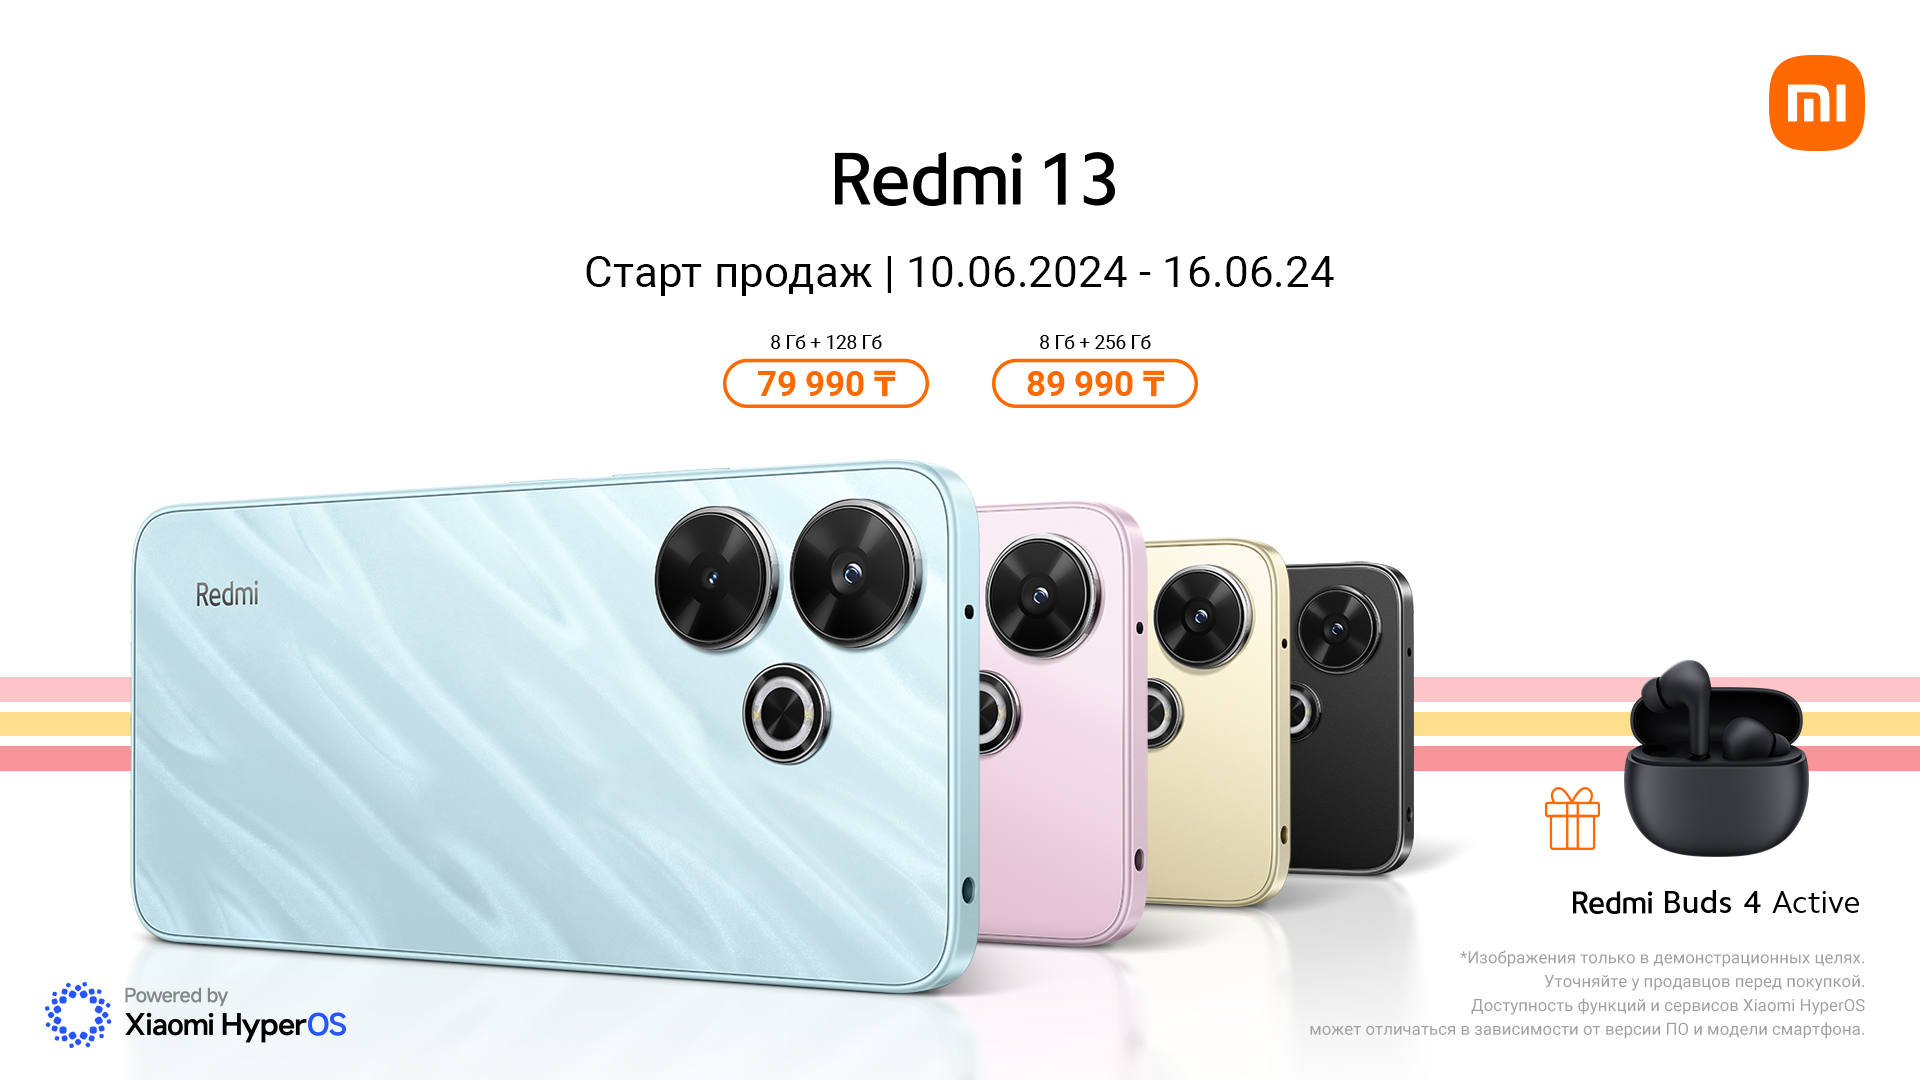 Новый Redmi 13 поступил в продажу в Казахстане: 108-мегапиксельная камера в сочетании с увлекательными функциями для раскрытия творческих талантов